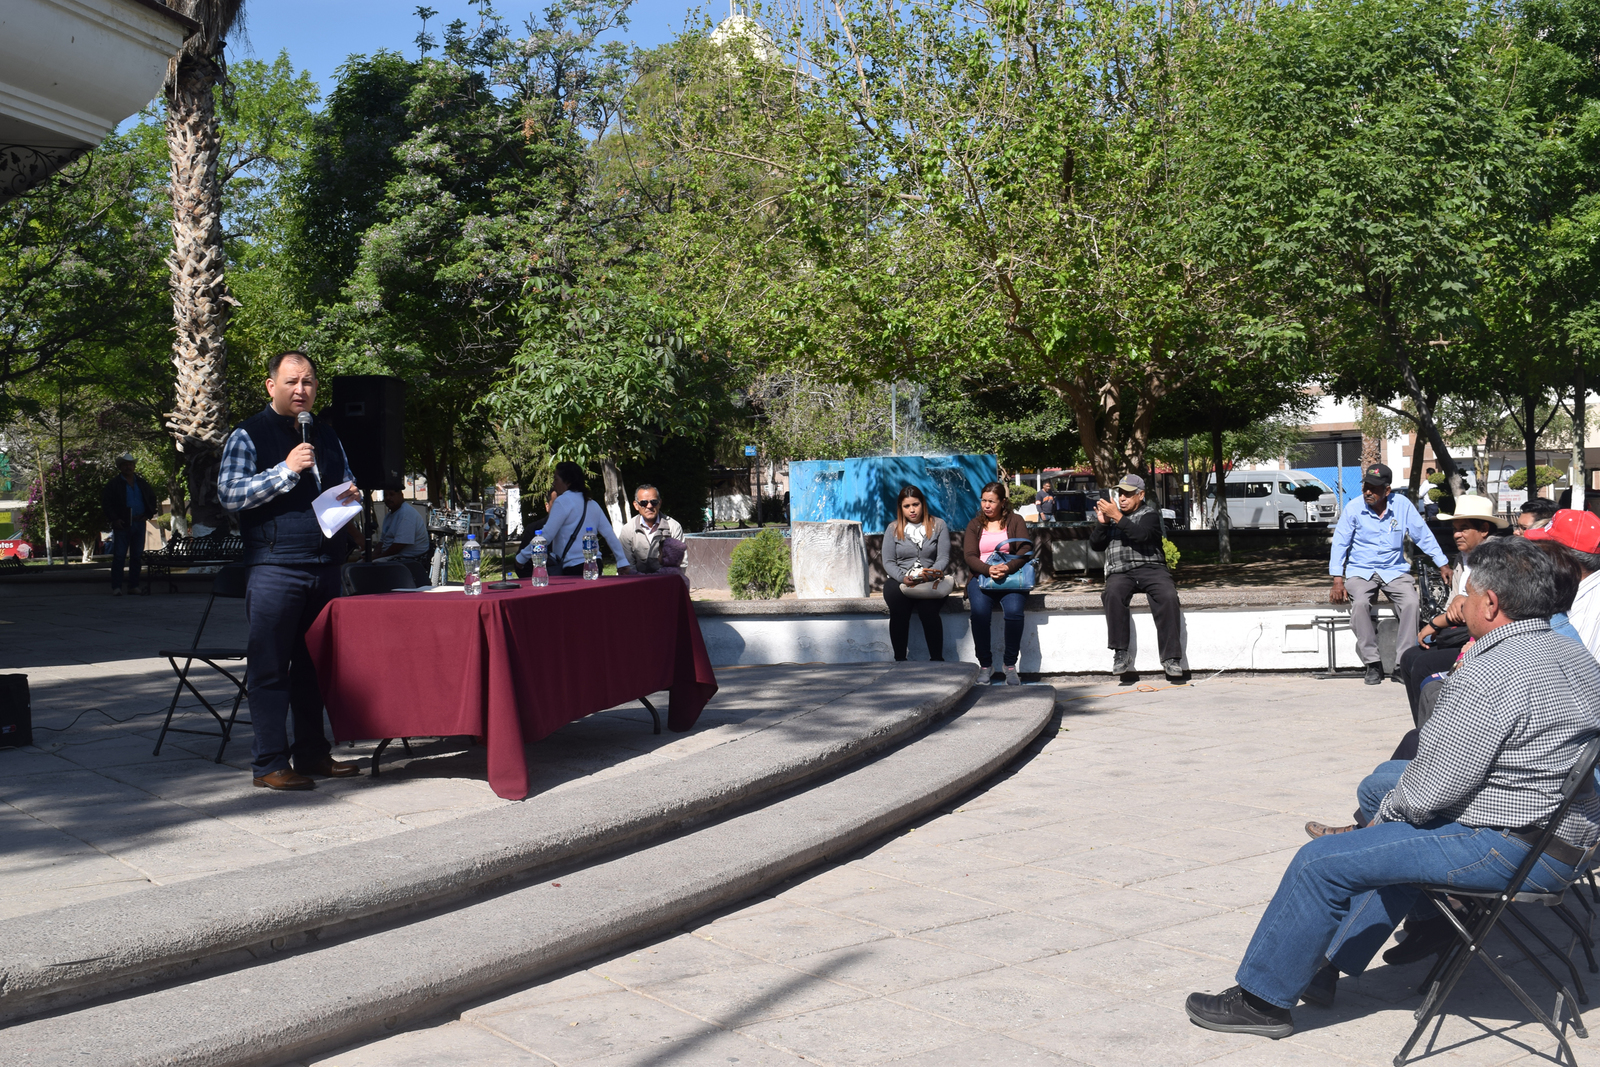 El precandidato Rafael Palacios Cordero reunió a decenas de personas en la Plaza de Armas, quienes lo apoyan en impugnación.